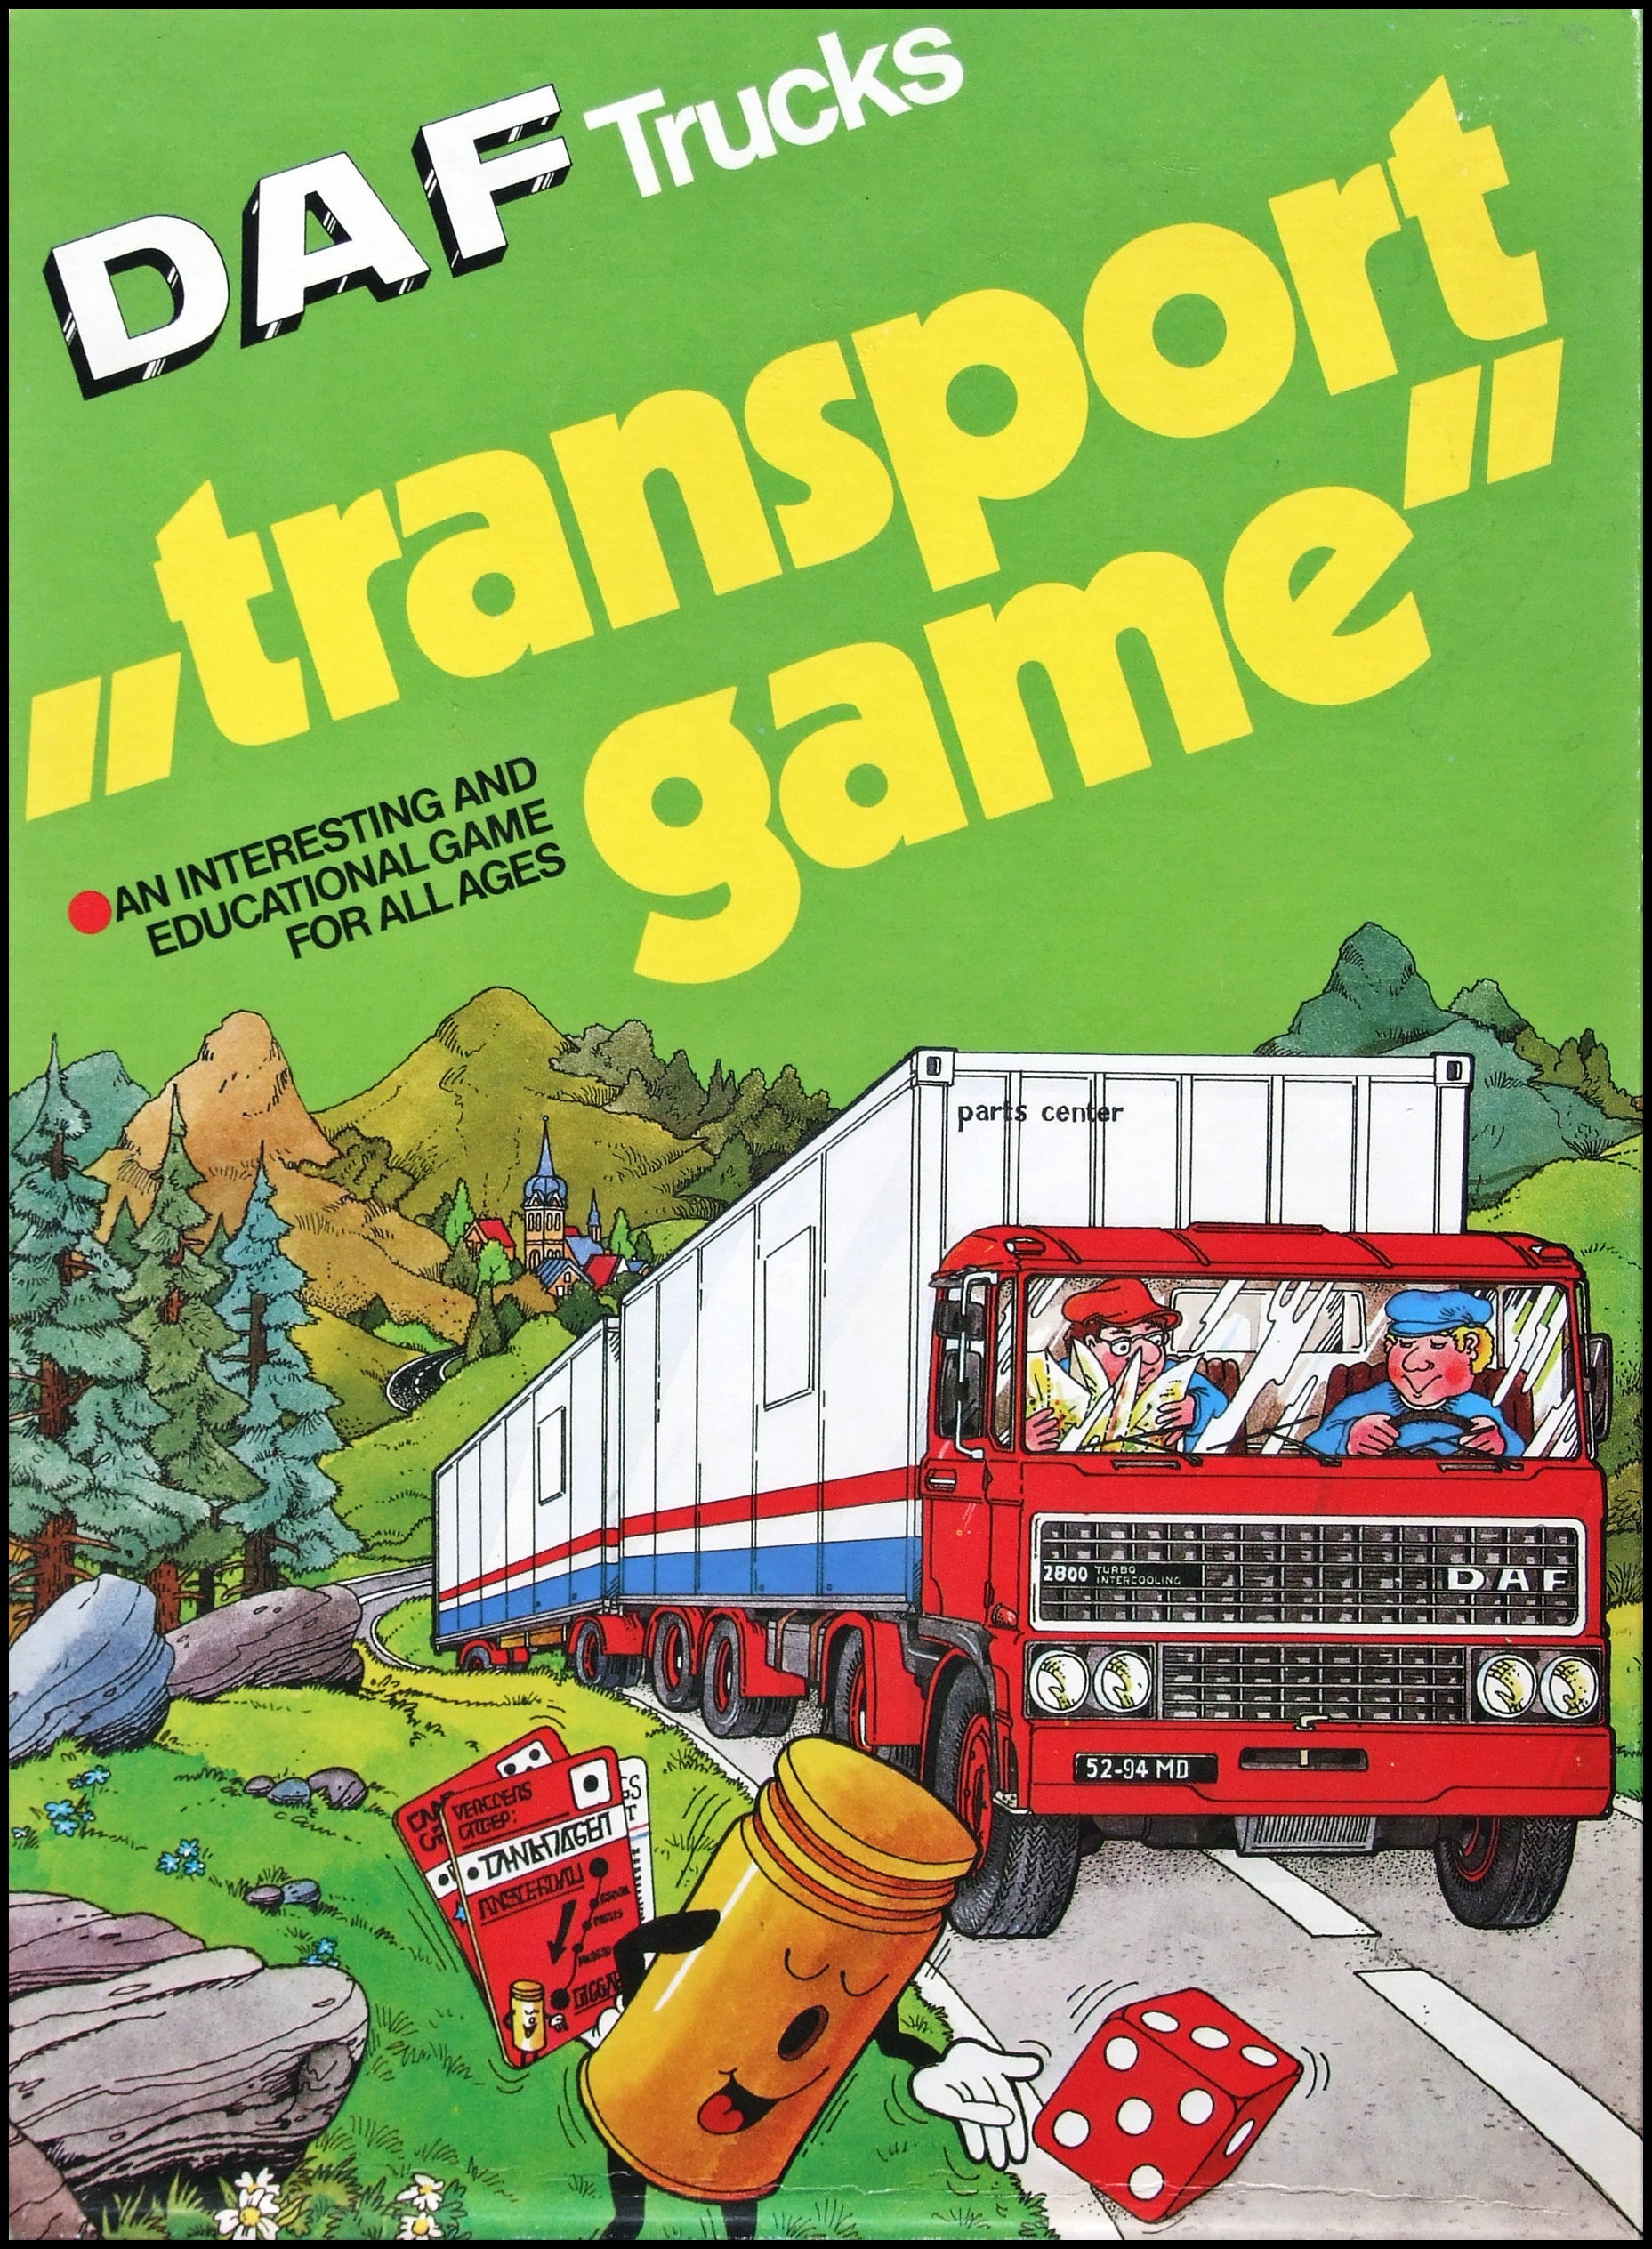 DAF Transport Game - Box Front